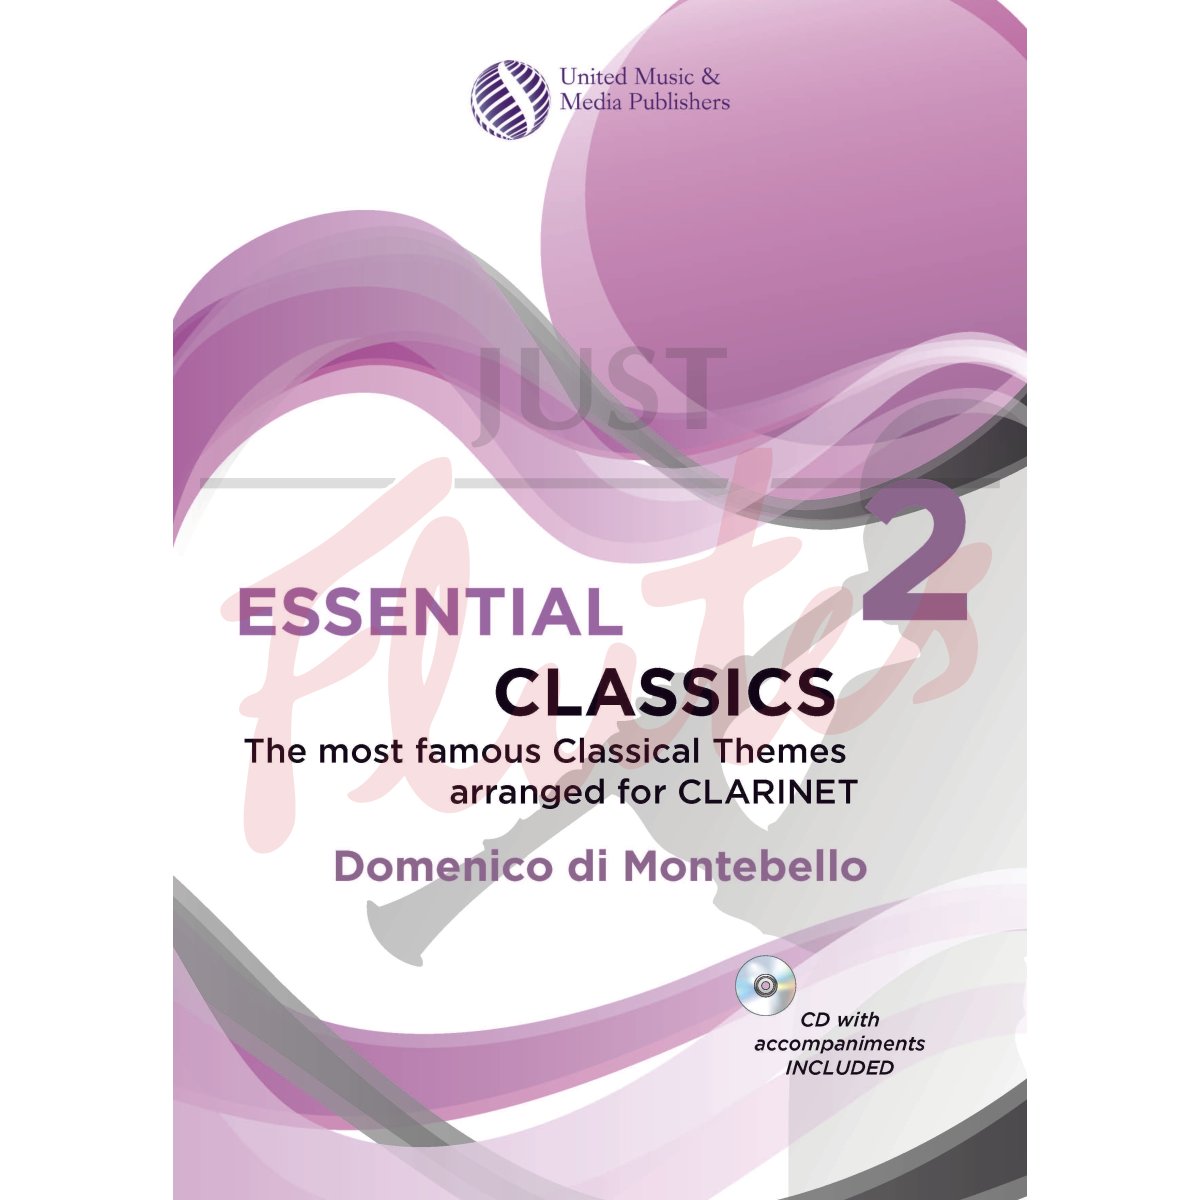 Essential Classics 2 for Clarinet